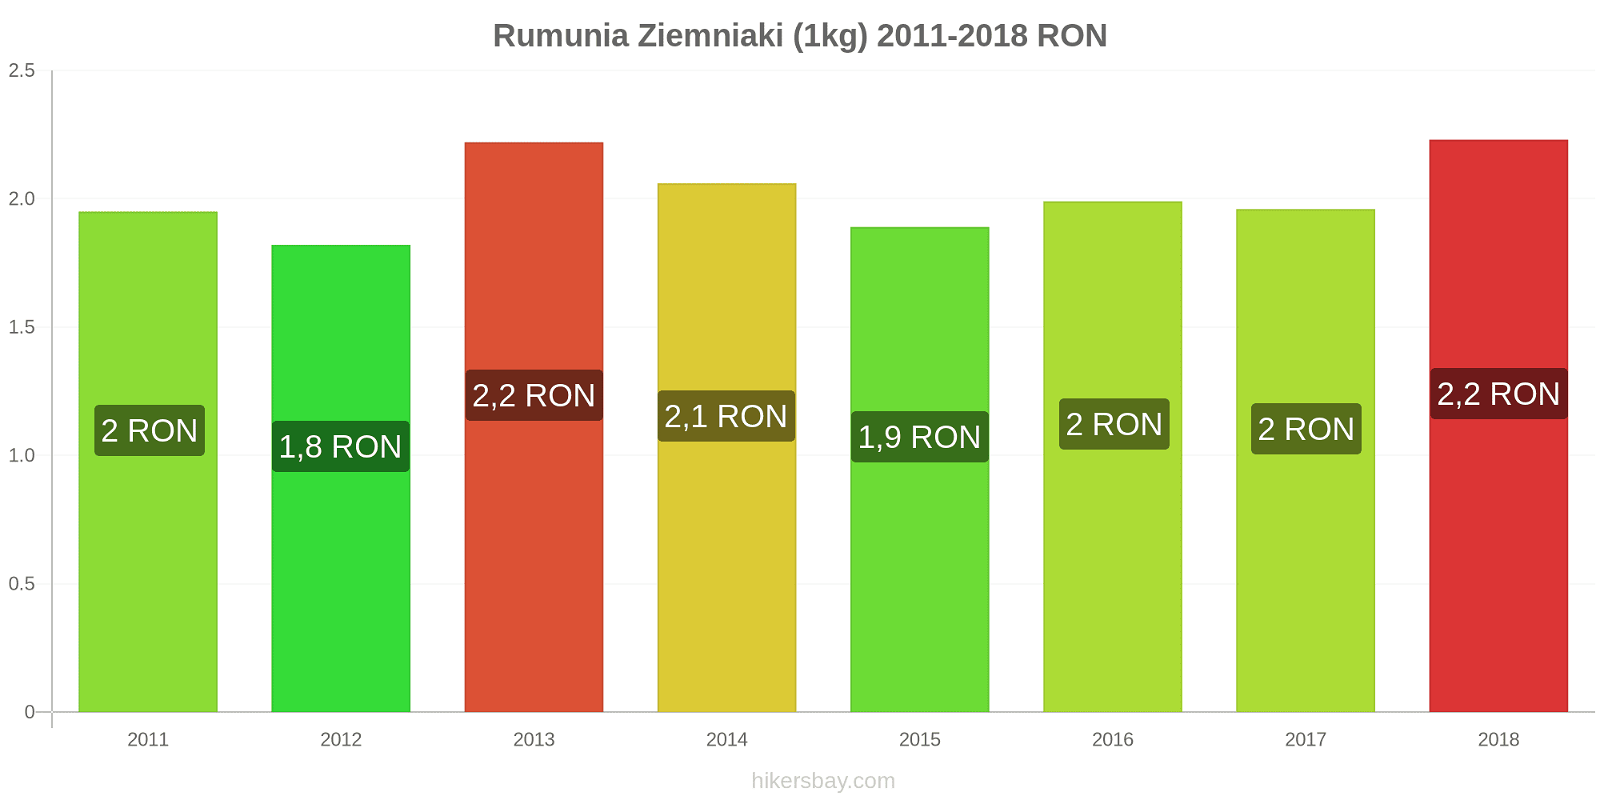 Rumunia zmiany cen Ziemniaki (1kg) hikersbay.com